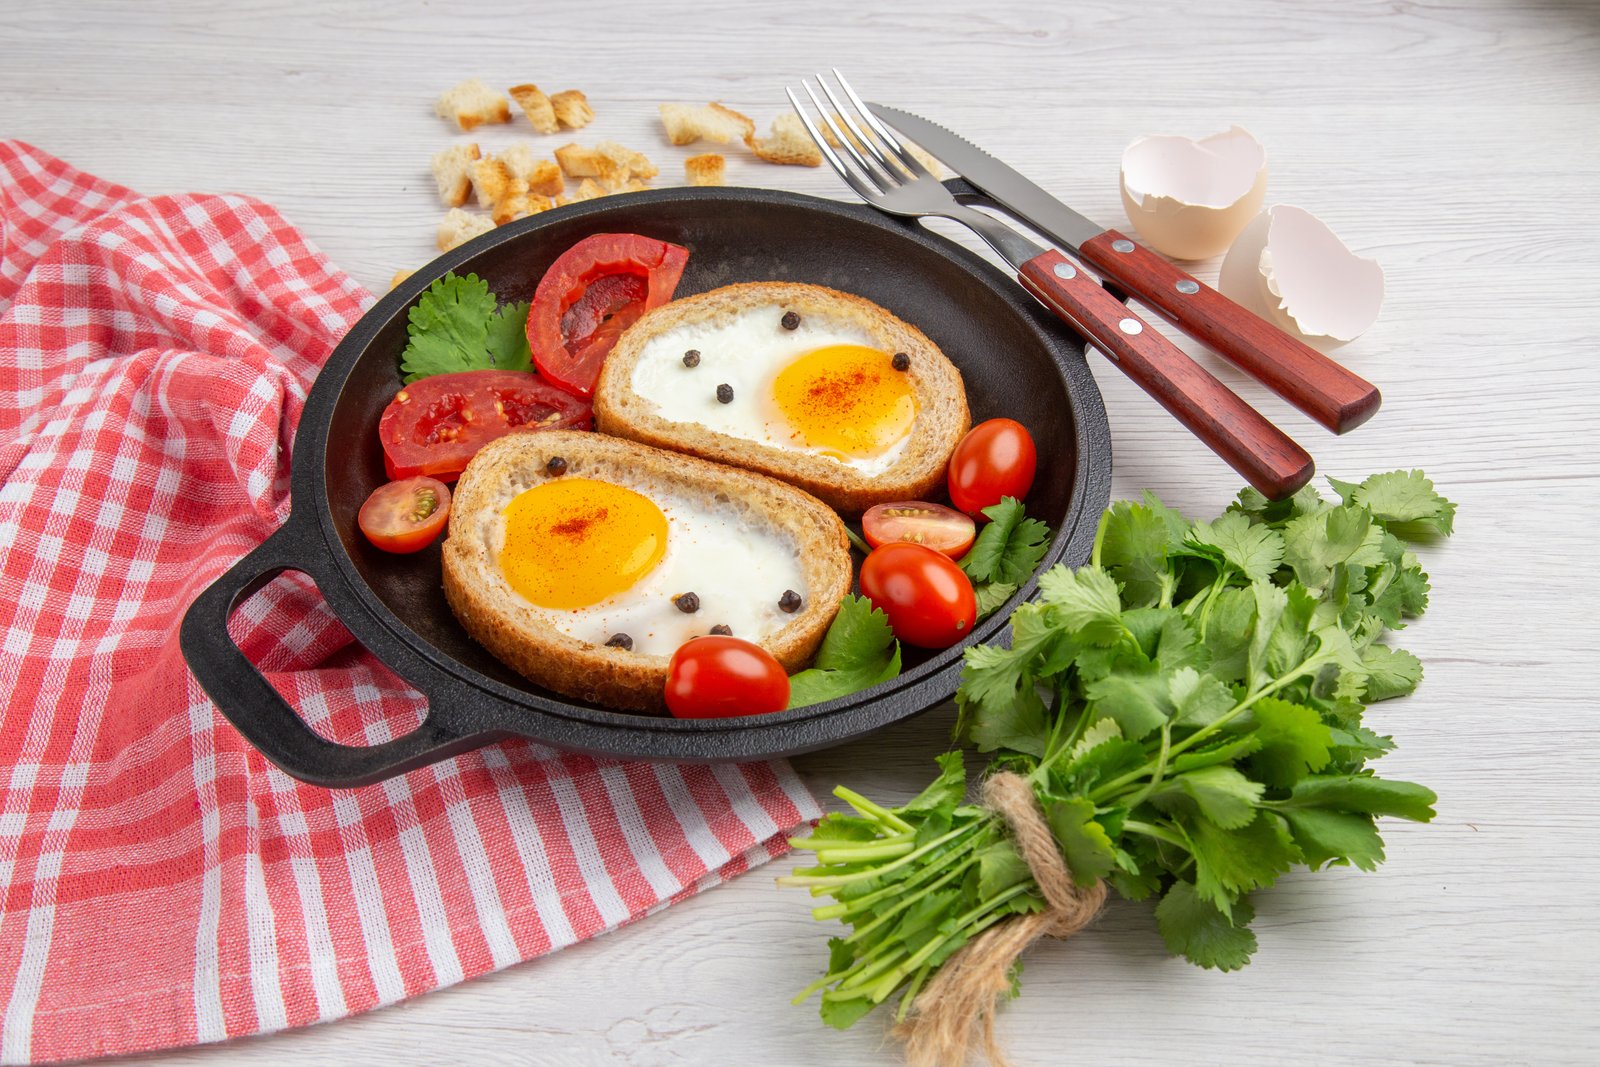 Работа над ошибками: 15 полезных завтраков взамен привычного меню